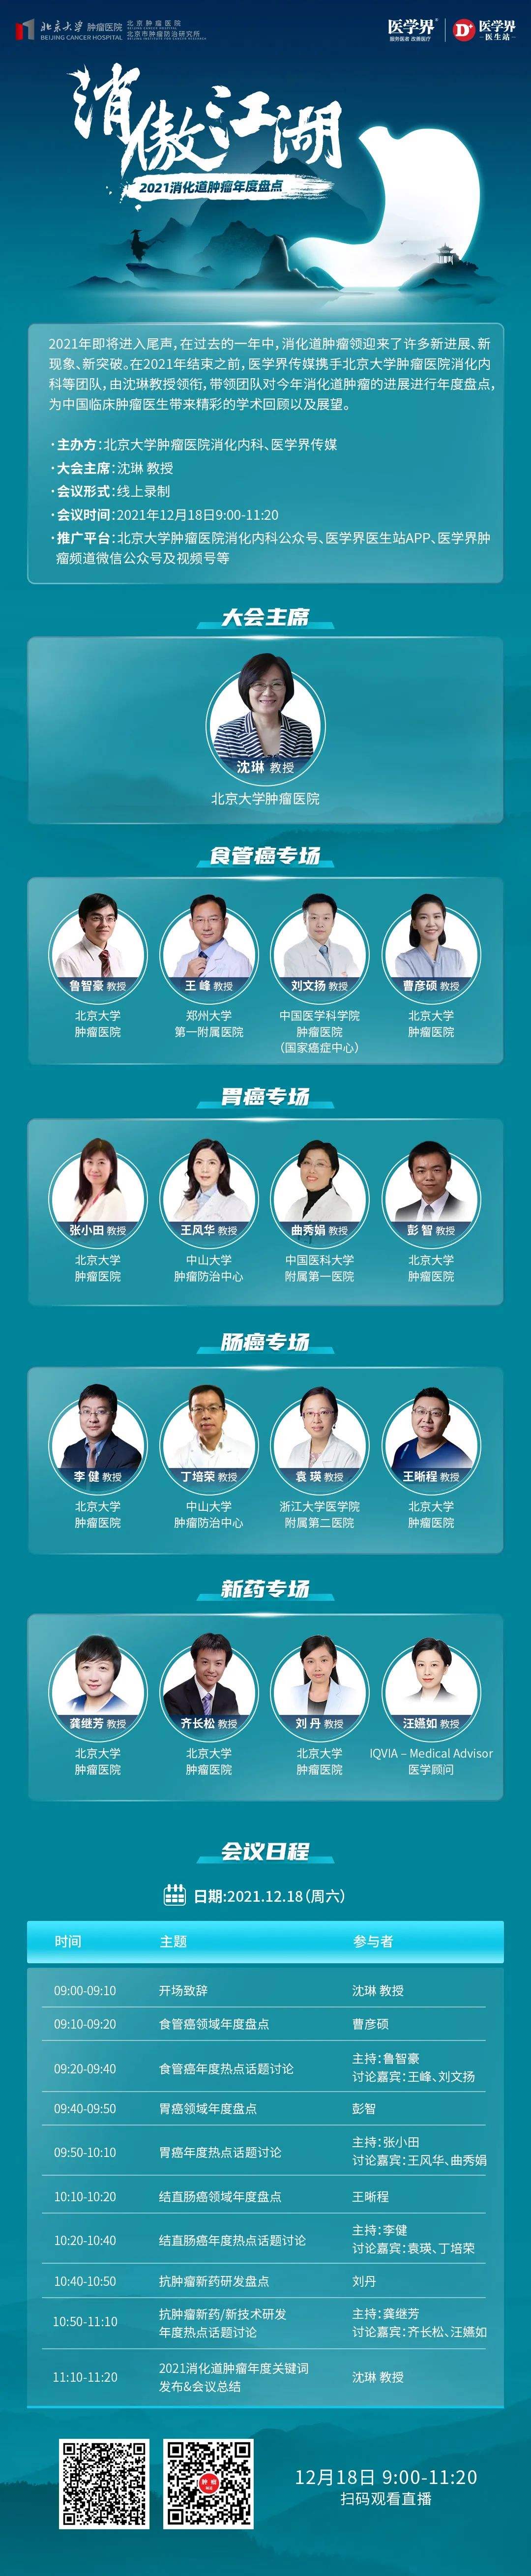 北京大学肿瘤医院专家名单	-北京大学肿瘤医院专家名单陈洐智